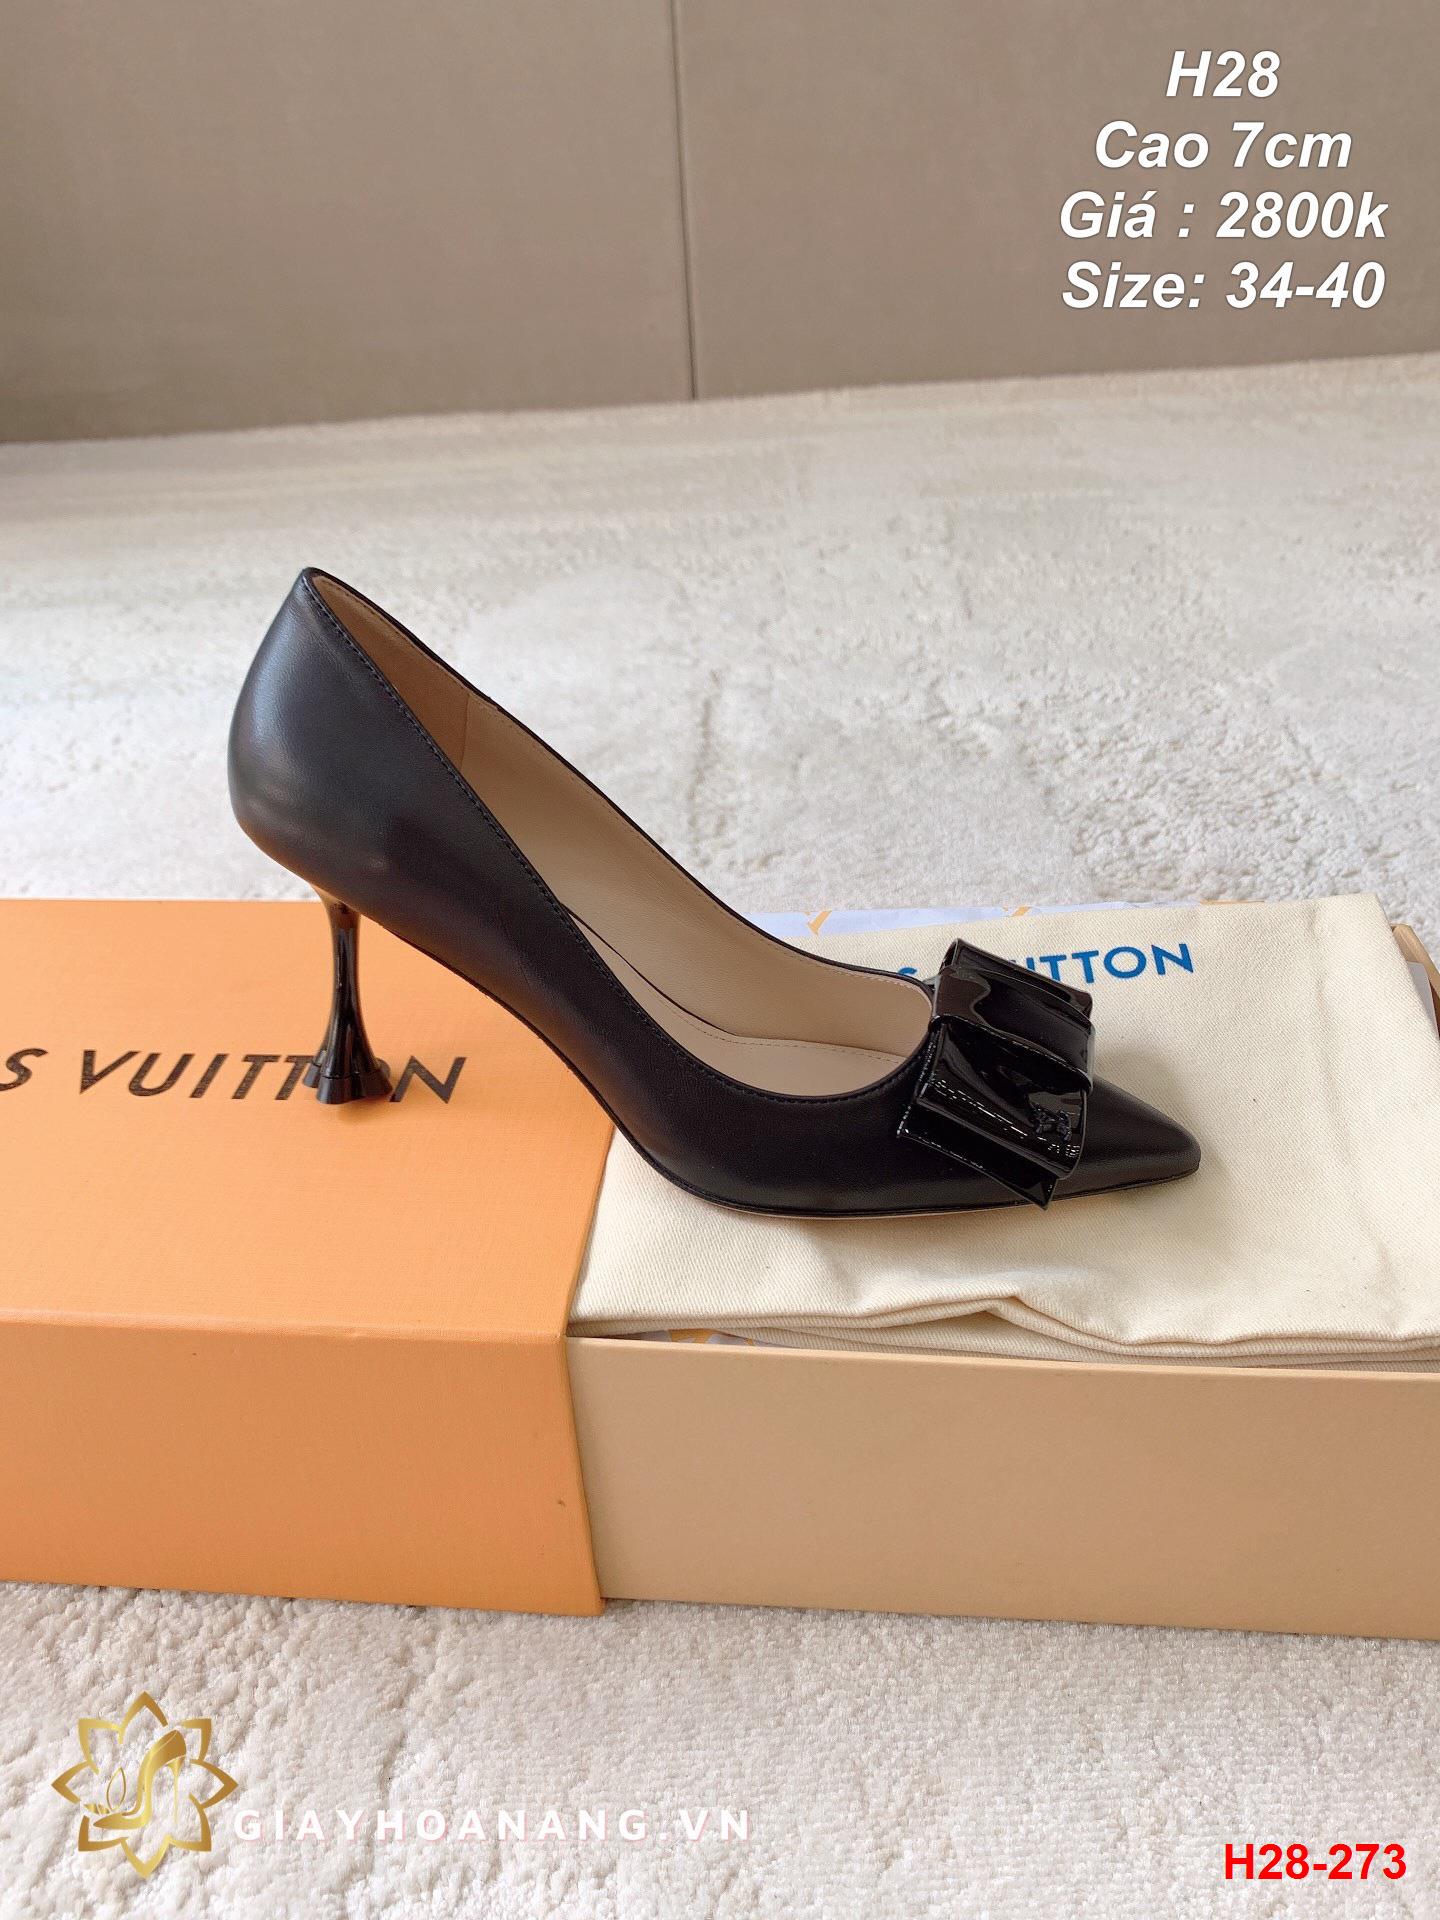 H28-273 Louis Vuitton giày cao 7cm siêu cấp